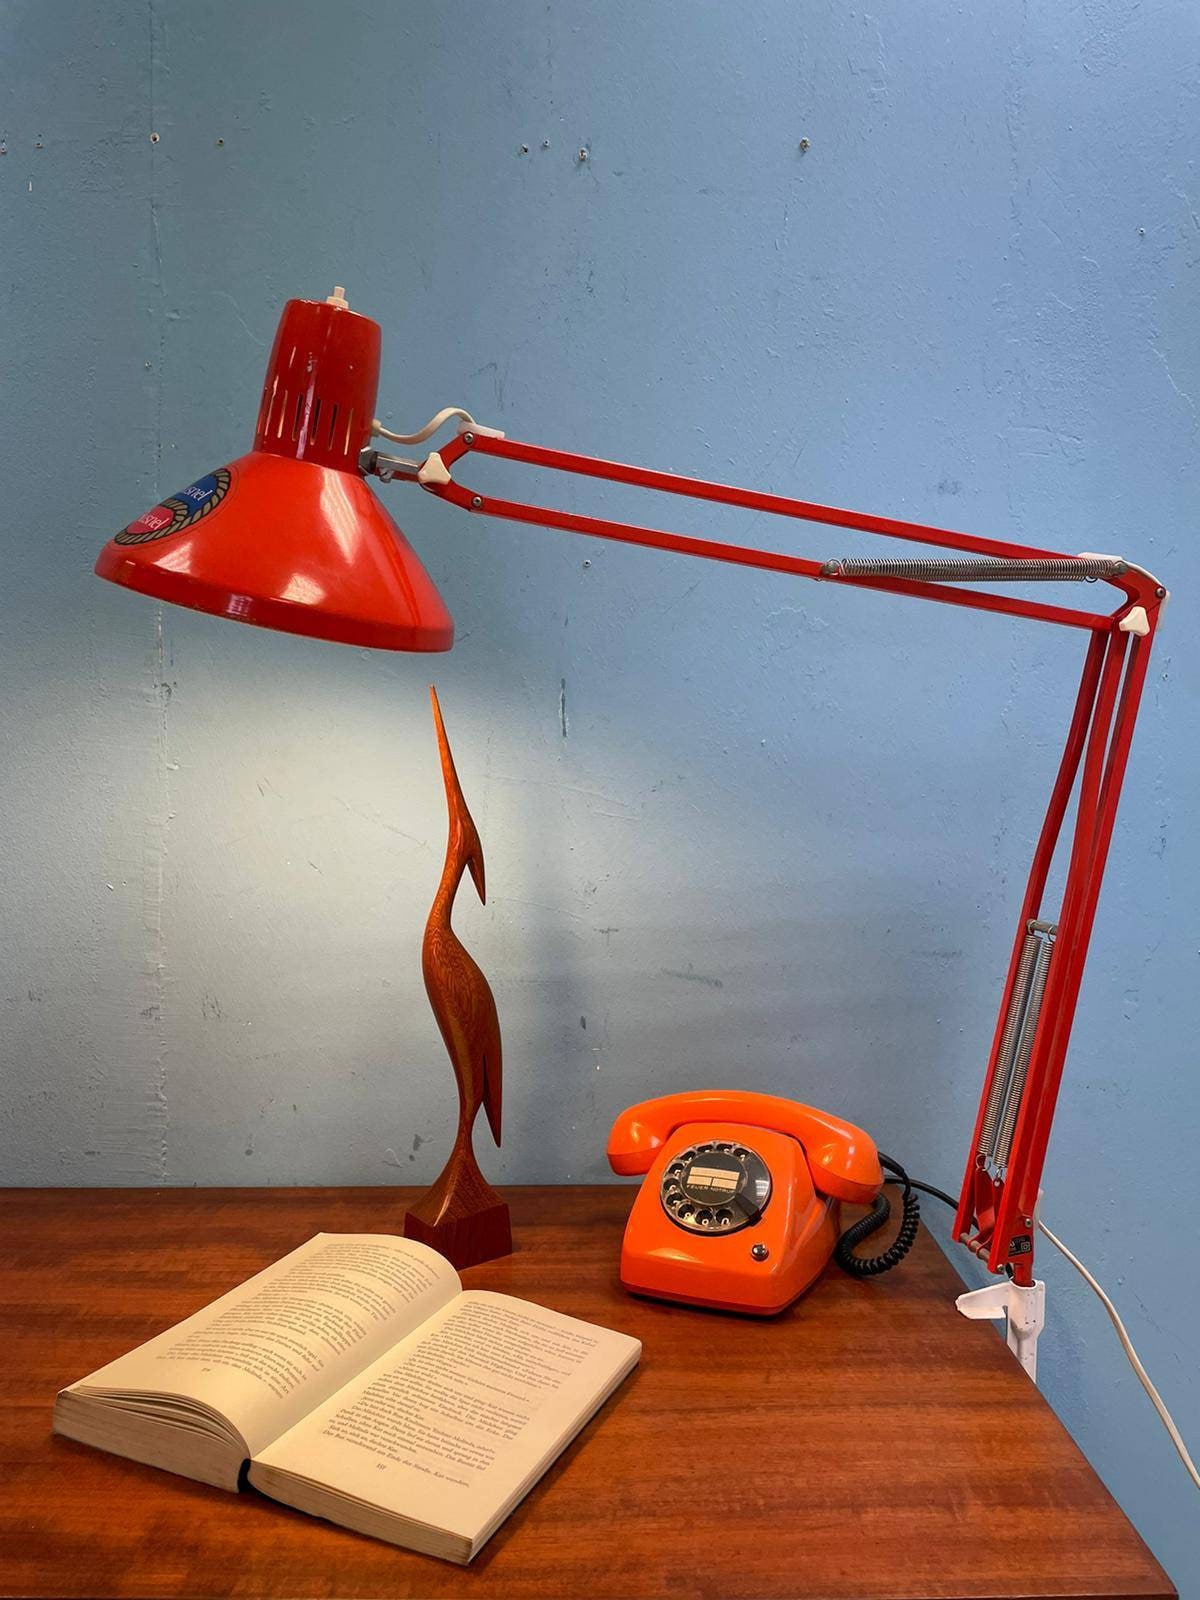 Lampe Eyeball orange vintage à poser datant des années 60